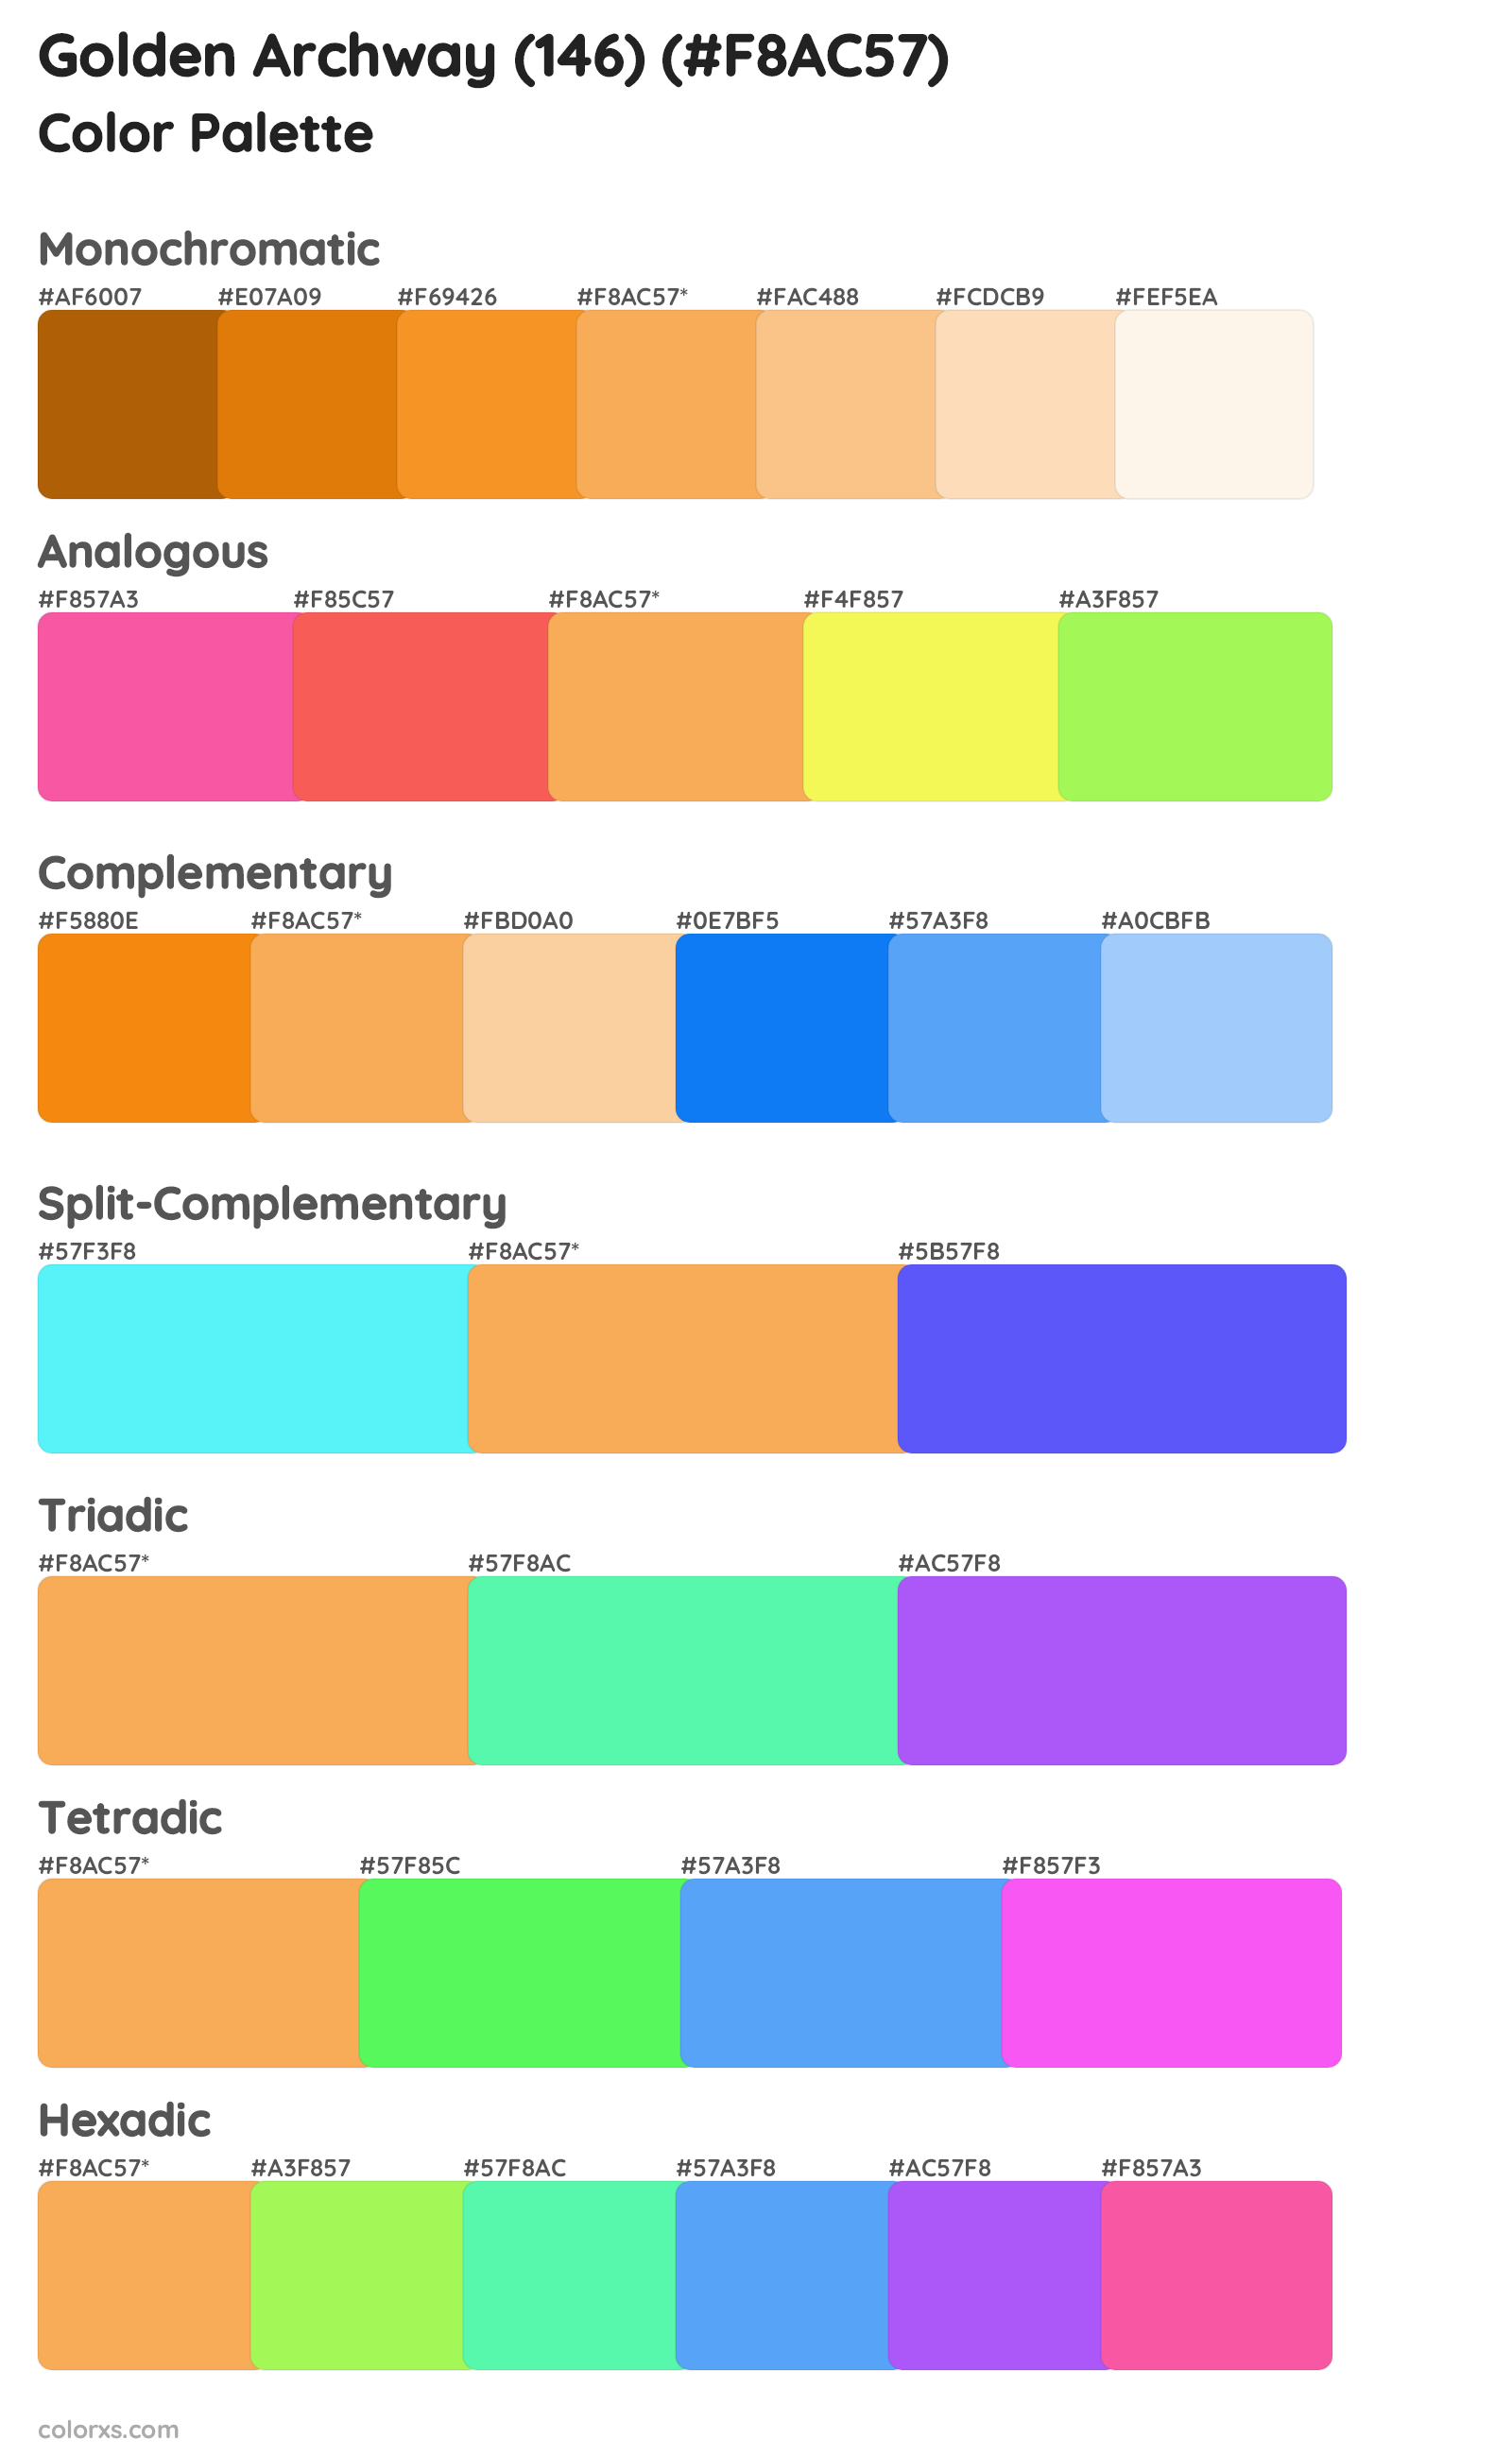 Golden Archway (146) Color Scheme Palettes